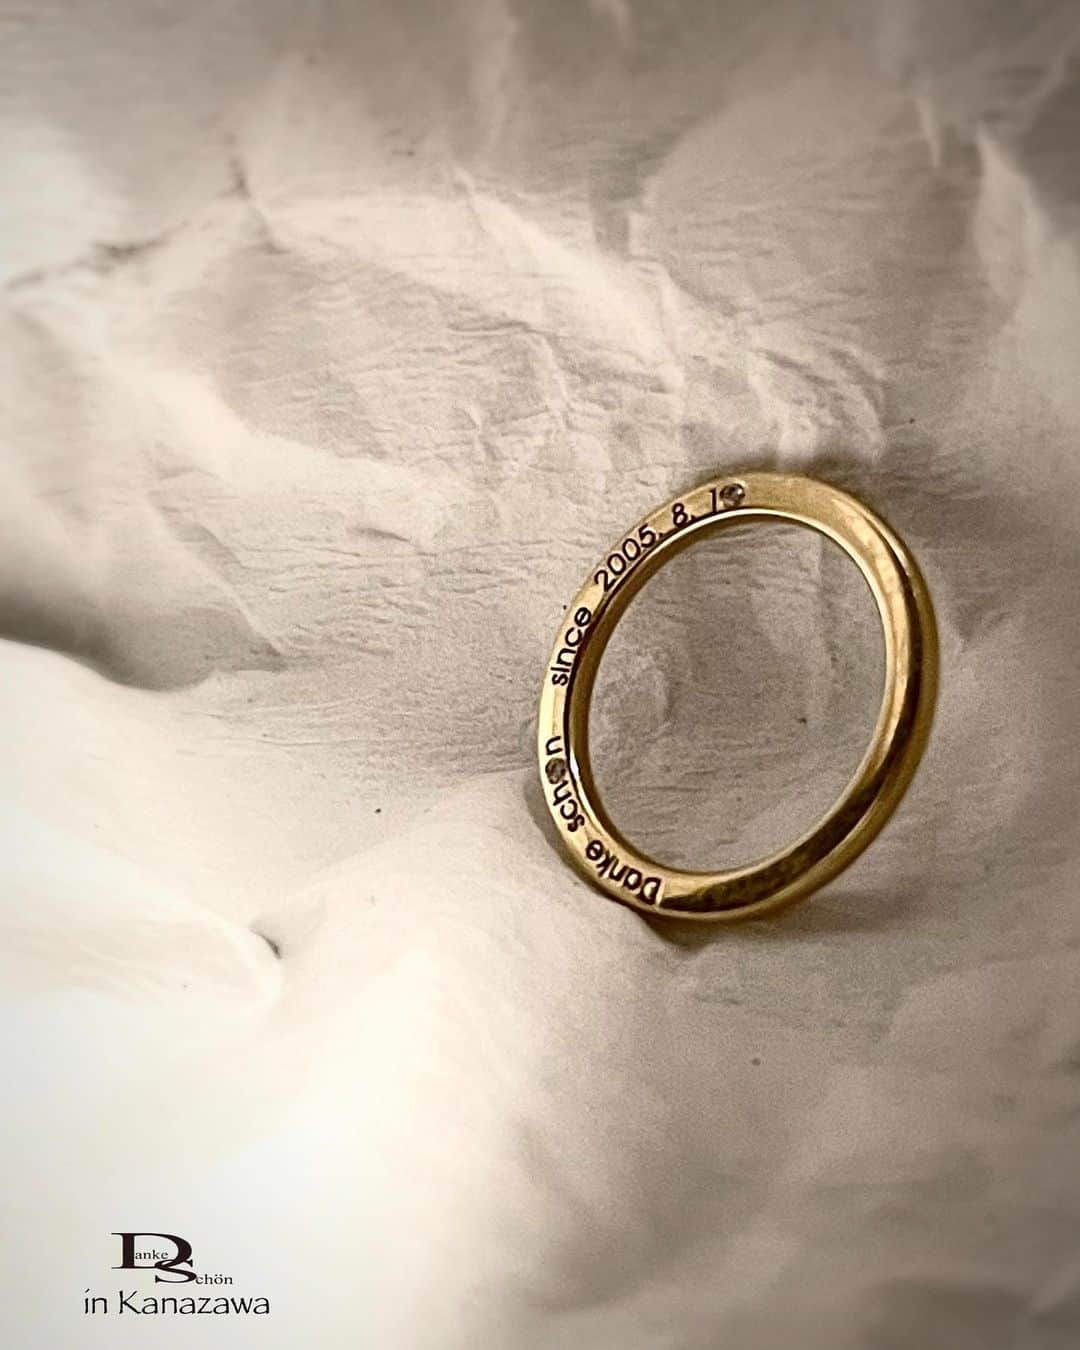 Danke schön ダンケ 金沢 結婚指輪 鍛造さんのインスタグラム写真 - (Danke schön ダンケ 金沢 結婚指輪 鍛造Instagram)「・ ・ ハイ🙌🏻 今日のバウアーさんは ガッツリ解説 ・ ・ もうドイツのリングに 携わって20年以上になると 当たり前…となっている事が ・ ・ 実は日本の市場ではまだまだ 当たり前ではなかったと…🤦🏼 ・ ・ なので今日は 派手さはない地味なお話し ・ ・ 『生涯共に…の指輪』に拘りたい方には こんな事も知りながら比べて頂けたら…の投稿です。 ・ ・ 良く｢婚約指輪」を買う時には イヤっと言うほどDiaの説明を聞きますよね！ ・ ・ 俗に言う『鑑定書』の説明 ・ ・ アレっ…と 思いませんか？ ・ ・ ｢婚約指輪」の時は皆さん 真剣により質の高いDiaを…探し求めているのに ・ ・ 『結婚指輪』に留められている 小さな小さなDiaになると ・ ・ 途端に… そこに着眼しなくなる😳 数の話しばっかりに夢中⁈ ・ ・ ※結婚指輪に留められている小さなDiaはメレーダイヤと 言う呼び名があり（0.1ct以下のDiaの事） ・ ・ 実はDiaは大きくても小さくても 『鑑定』するのに専門の鑑定機関を通すので お金がかかるのてです。 ・ ・ 結婚指輪に留められている小さなDiaは 鑑定していない Diaが留められている事が多いです。 ・ ・ 仮に鑑定したDiaならば 鑑定書があるハズです😳又は 婚約指輪の時と同様にDiaの説明があると思います。 ・ ・ ハイ🙌🏻クリスチャンバウアーは Dia屋さんではないですが ・ ・ 実はバウアーの指輪にDiaが留められている場合には　 指輪の内側に全て ・ ・ 指輪の素材の刻印の他にDiaの鑑定した内容が 全て打ち込んでのお届けです。 📷スライドして見てください。 ・ ・ 『鑑定書とは？』日本の場合 本みたいなモノが手渡されると思いますが…。 ・ ・ バウアーの場合は 指輪の内側を見れば一目で分かると言う訳 ・ ・ 仮にもらった鑑定書 この先！何回見ますか?って感じ ・ ・ さすが 合理的なドイツ ・ ・ 仕舞いには どこに行ったかわからない😰etc. ・ ・ ある意味ecoのお国柄 ドイツと言う感じもしますが ・ ・ こんな単純明快な方法 なんで思いつかない？かな？…と ・ ・ このお話しをするのに 例えで撮影したモデルは ｢スライスRing」の側面に留められている 1Diaあたり0.04ctの指輪です。 ・ ・ こんな小さいなDiaですら 鑑定されたDiaをバウアーは留めています。 ・ ・ そぅ！只Diaが留められている訳ではなく ちゃんと表記出来るレベルのDiaと言う訳です。 刻印もめちゃくちゃキレイでしょ！ しかも幅1.3mmにこの刻印ですよ！ ・ ・ 世の中たくさんの ｢鍛造製法」と言われている指輪や ｢ダイヤモンドリング」と言われている指輪がありますが ・ ・ やはり！何かしらの 違いが必ずあるのです。 ・ ・ その違いは ストレートに言えば ・ ・ お値段の差に出ています。 ・ ・ 見た目が仮に似ていても ・ ・ こんな肉眼で分かるようで 分からないような所にも ・ ・ 拘りと言う言葉以上に 『生涯共に…の指輪』を真剣に考えれば考えるほど 譲れなくなる『質』を求めた結果が クリスチャンバウアーの指輪だと私は捉えています。 ・ ・ 是非！表面的な所ばかりでなく こんな所にも着眼しながら 指輪を見て頂ければと思います。 ・ ・ 小さくても されどDiaのお話しでした。 ・ ・ ・ ※フルエタニティリングの場合モデルよっては 今回の0.04ctよりもっと小さいDiaの時でも 指輪の内側に刻印されてますよ。御安心くださいね。 ・ ・ 例外 ・ブラックダイヤの場合はctのみ ・　 📷1〜5の指輪は幅1.3mmに刻印 📷2:指輪の内側にある刻印解説 📷3:指輪の側面に2Dia 📷4:このモデルの場合の内側刻印解説 📷:実際に身につけたらこんなに小さいの ・ ・  【工業系 鍛造削り出し】 🇩🇪クリスチャンバウアー 専門店 ・ ・ ワンランク上をいくノウハウの クリスチャンバウアーの選び方なら 『Danke schön 』 ・ ・ ・ —— 𝐃𝐚𝐧𝐤𝐞——— ▪︎ Instagramプロフィール 🔜 @danke2005  —————————————————————𝐒𝐜𝐡⍥𝐧——— ・ ・ #クリスチャンバウアー金沢 #鍛造指輪 #鍛造リング #結婚指輪 #結婚指輪オーダー #切削加工 #結婚指輪探し #結婚指輪選び #指輪探し #指輪選び #マリッジリング #結婚指輪金沢 #金沢結婚指輪 #セカンドリング #結婚指輪買い替え #地金屋鍛造 #ブライダルリング #結婚記念日 #ベビーリング #ドイツリング #自分へのご褒美 #クリスチャンバウアーダンケ #クリスチャンバウアーdanke   ------------------------------------------✈︎ ---------  鍛造削り出し 🇩🇪クリスチャンバウアー 専門店 『𝐃𝐚𝐧𝐤𝐞 𝐬𝐜𝐡⍥𝐧』 ・ • 営業時間 am11:00〜pm9:00 • 定休日 : 木曜日 • 駐車場 : 店舗前OK • ご予約 : 優先」9月23日 14時40分 - danke2005